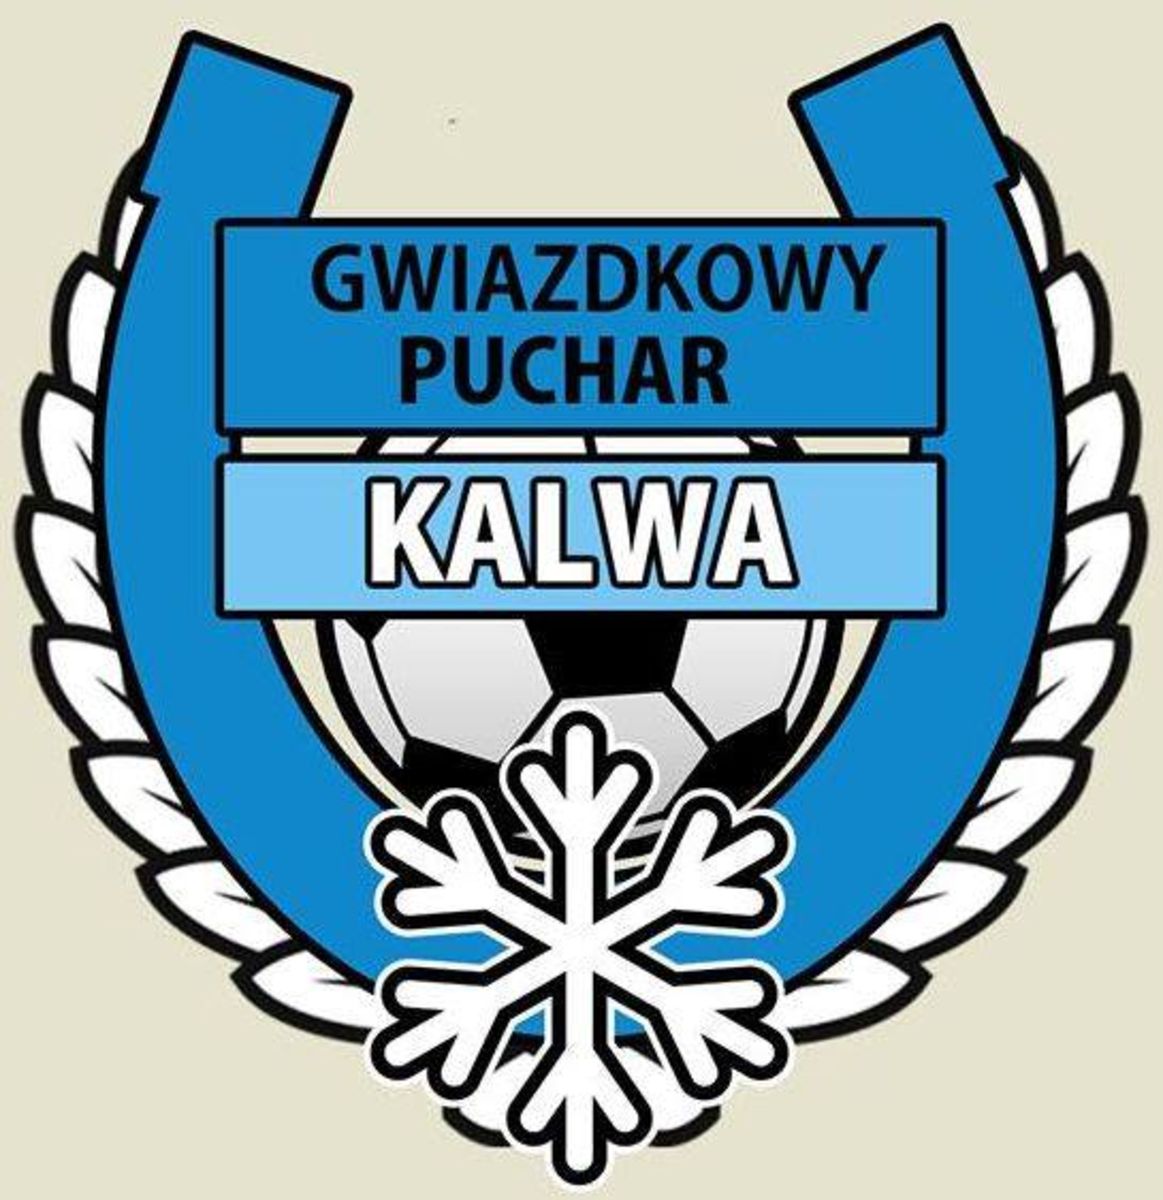 Logotyp Gwiazdkowego Pucharu Kalwa. Fot. dwadozera.pl